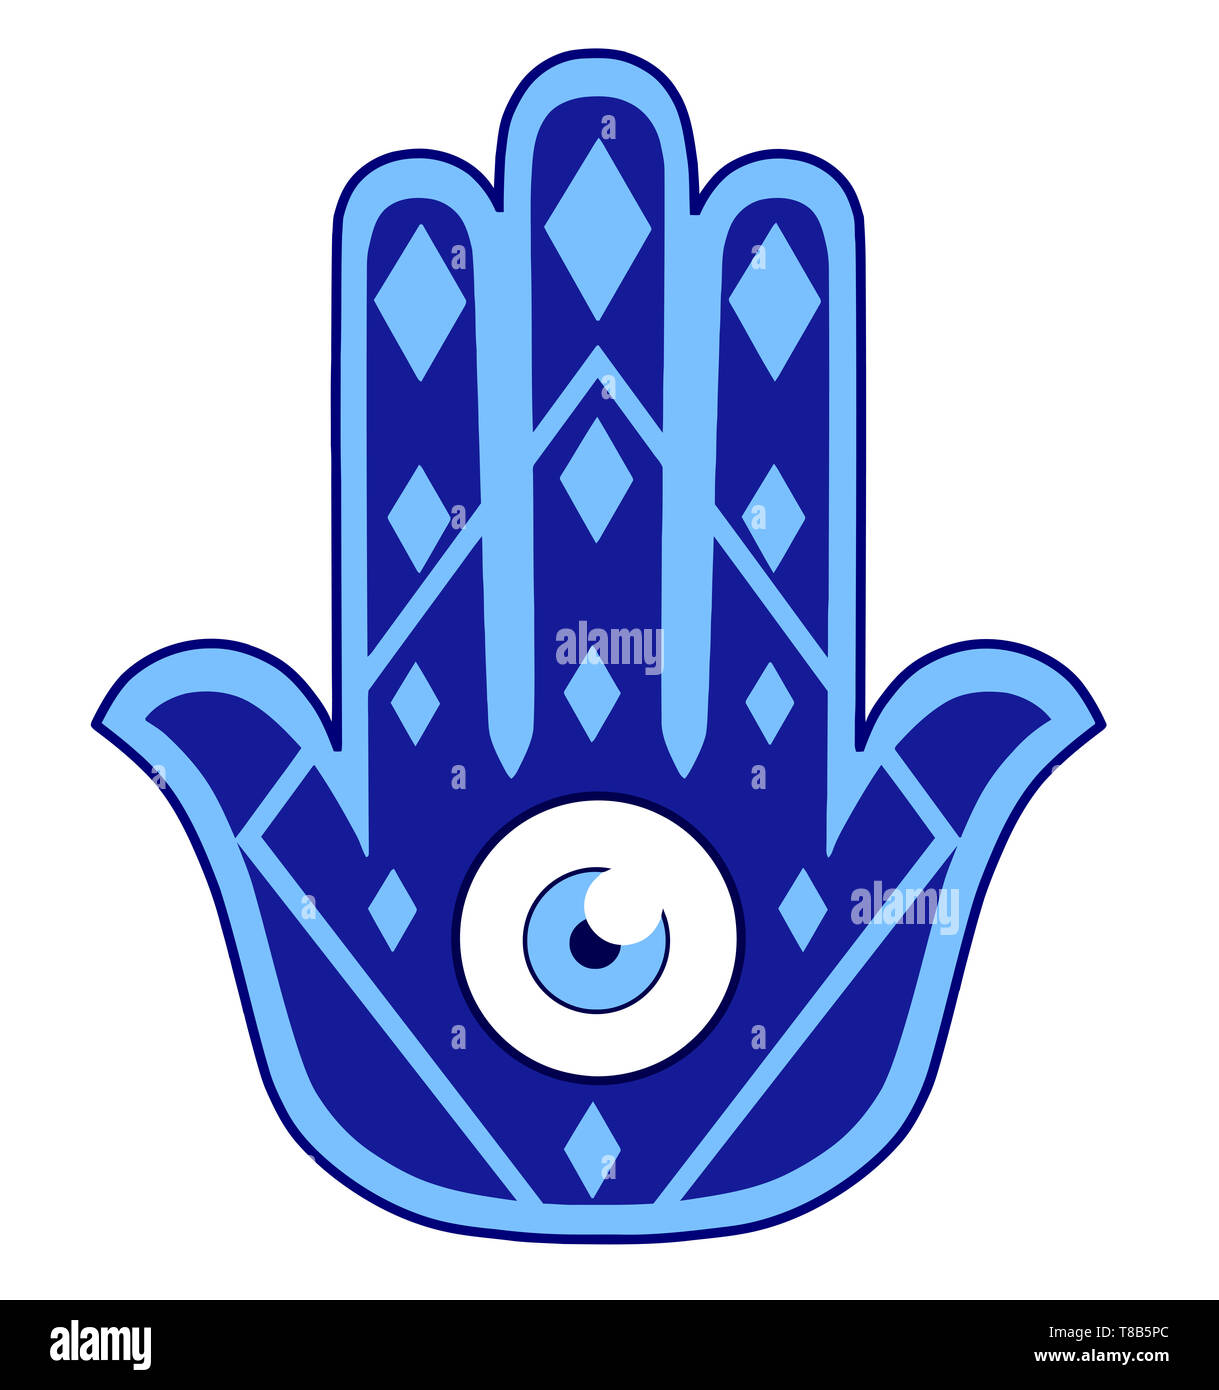 Amulette hamsa yoga protection spirituelle ésotérique lucky eye part illustration Banque D'Images